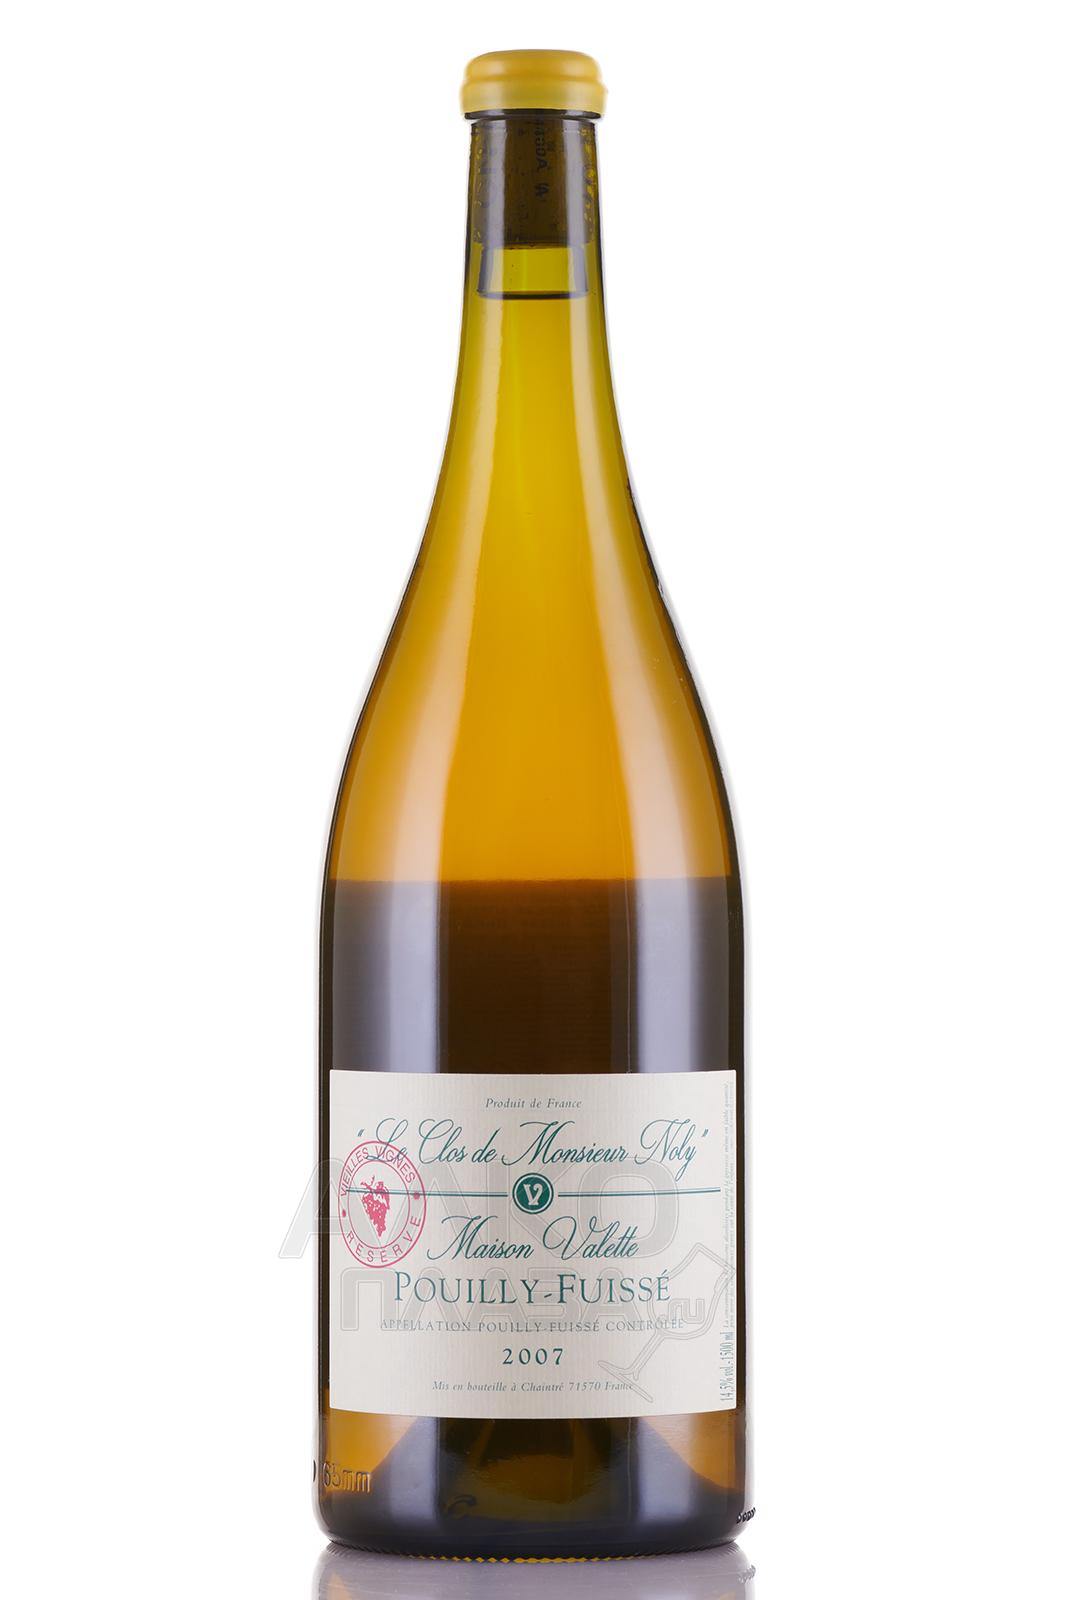 Pouilly-Fuisse Maison Valette Le Clos de Monsieur Noly Vieilles Vignes - вино Пуи-Фюиссе Мэзон Валет Ле Кло де Месье Ноли Вьей Винь 1.5 л белое сухое